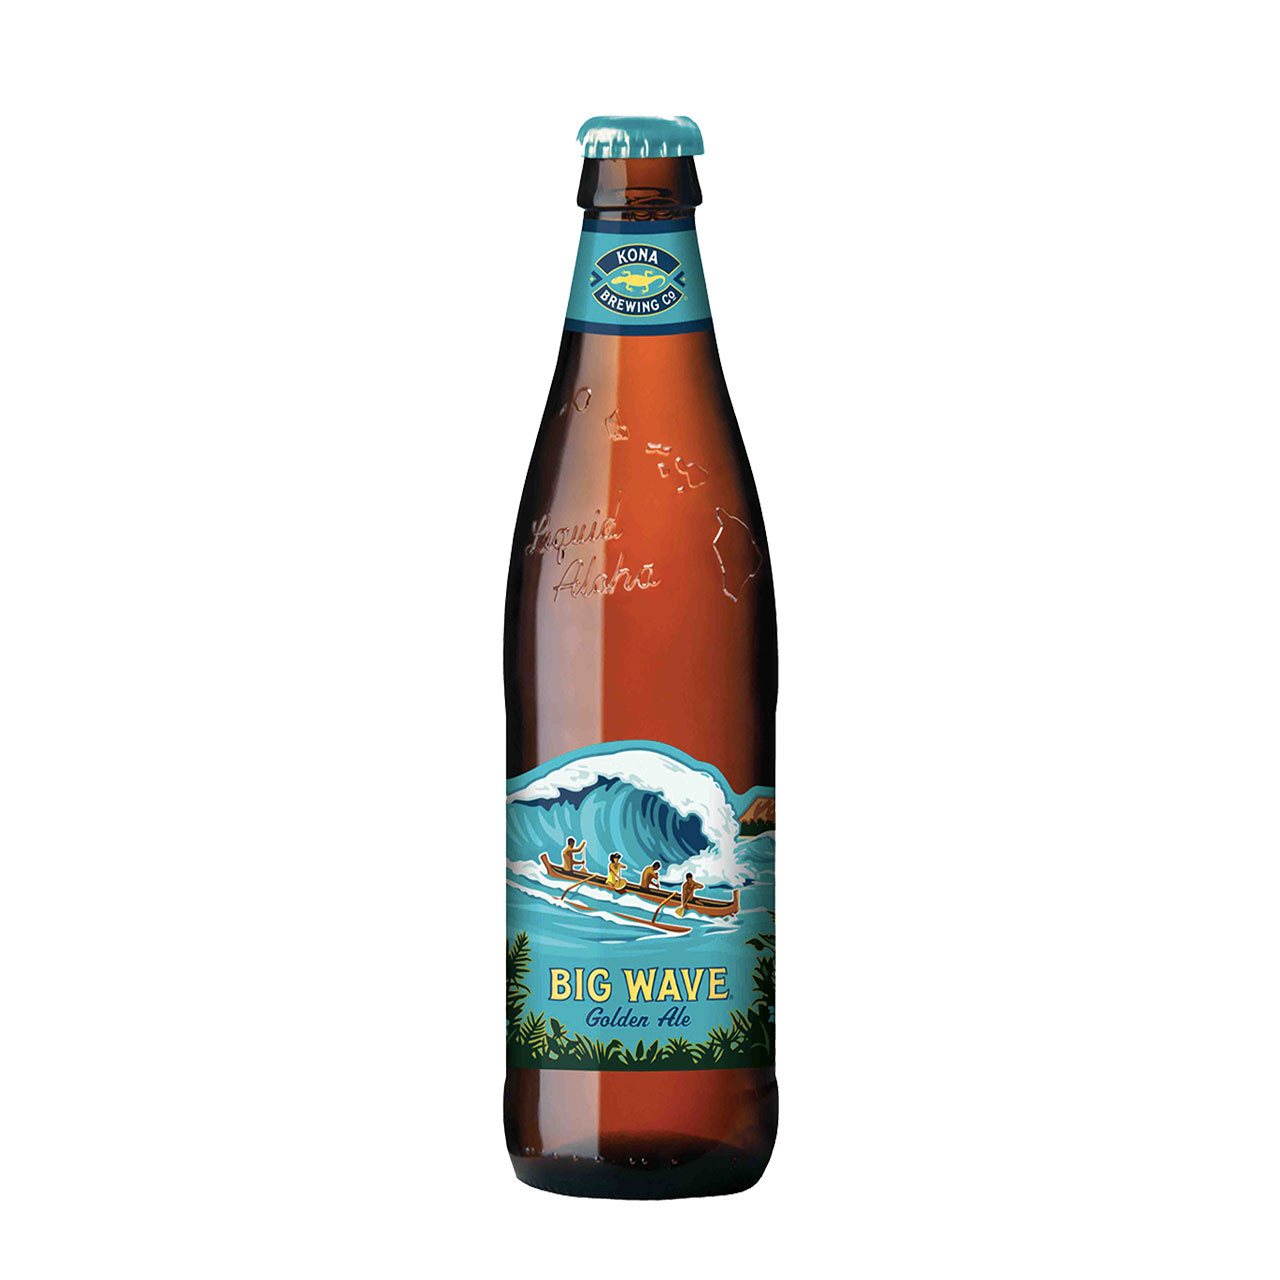 Kona Big Wave fles 35,5cl. Is het licht blond bier van Kona met 4.4% alcohol